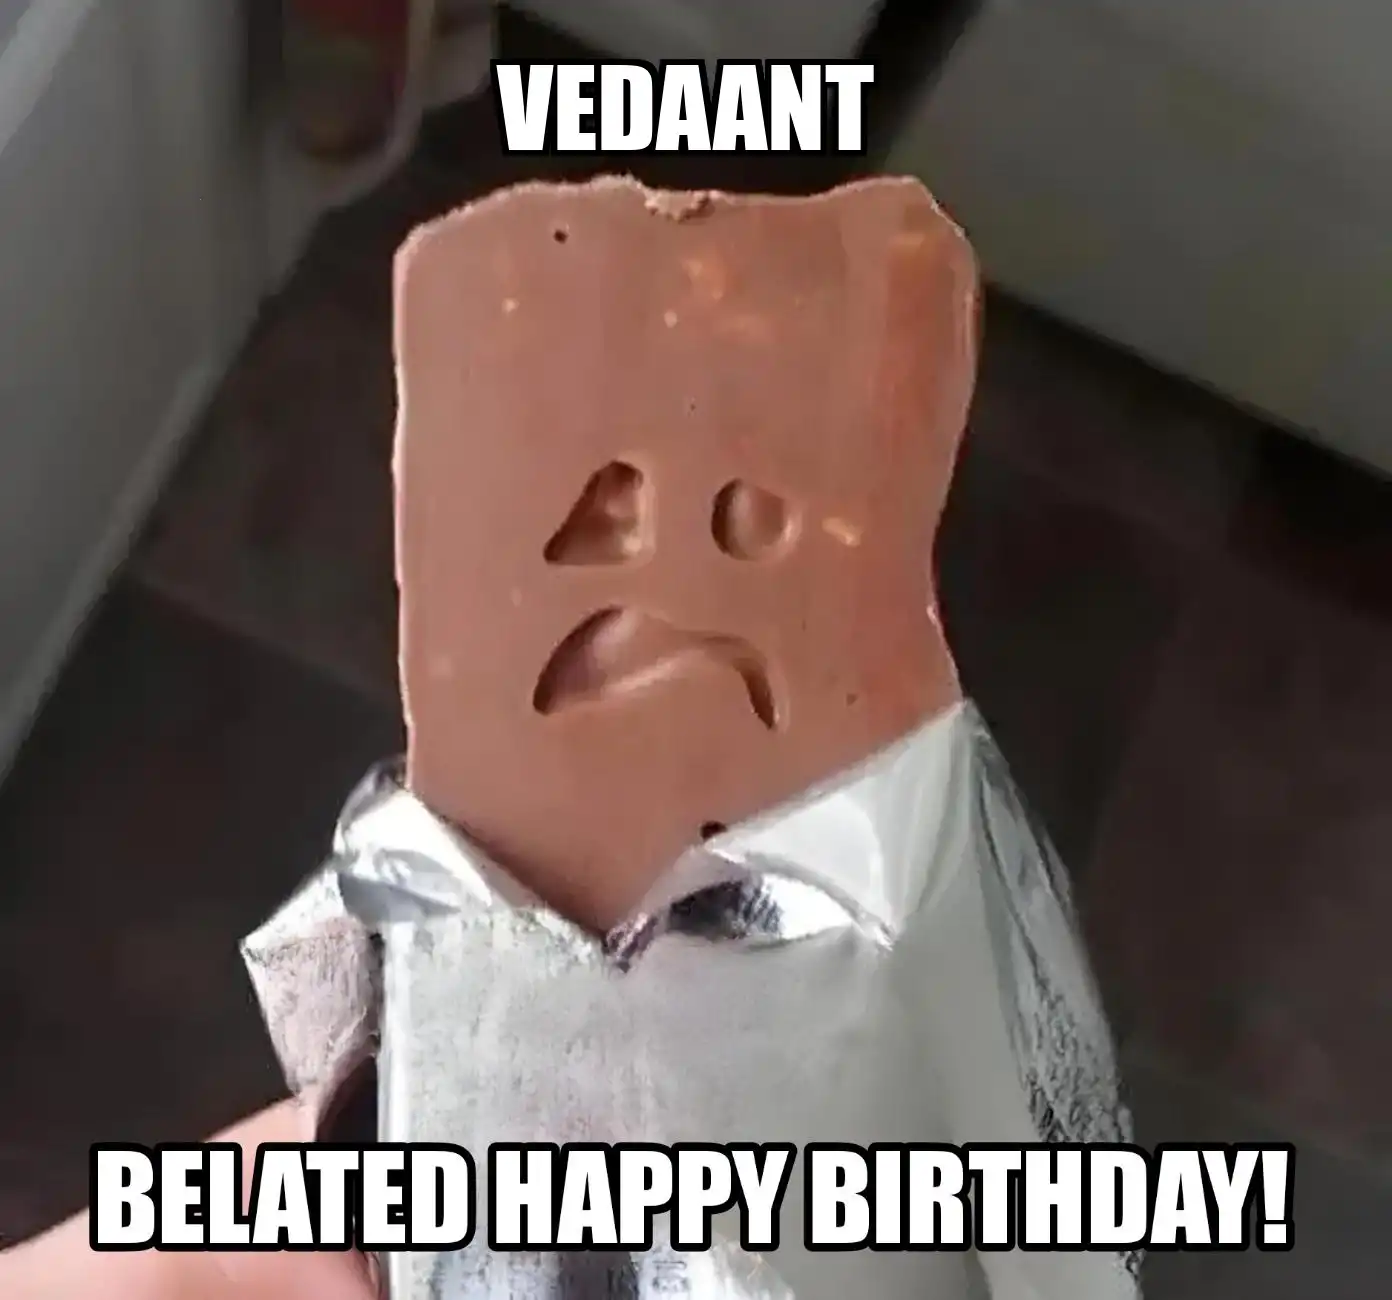 Happy Birthday Vedaant Belated Happy Birthday Meme